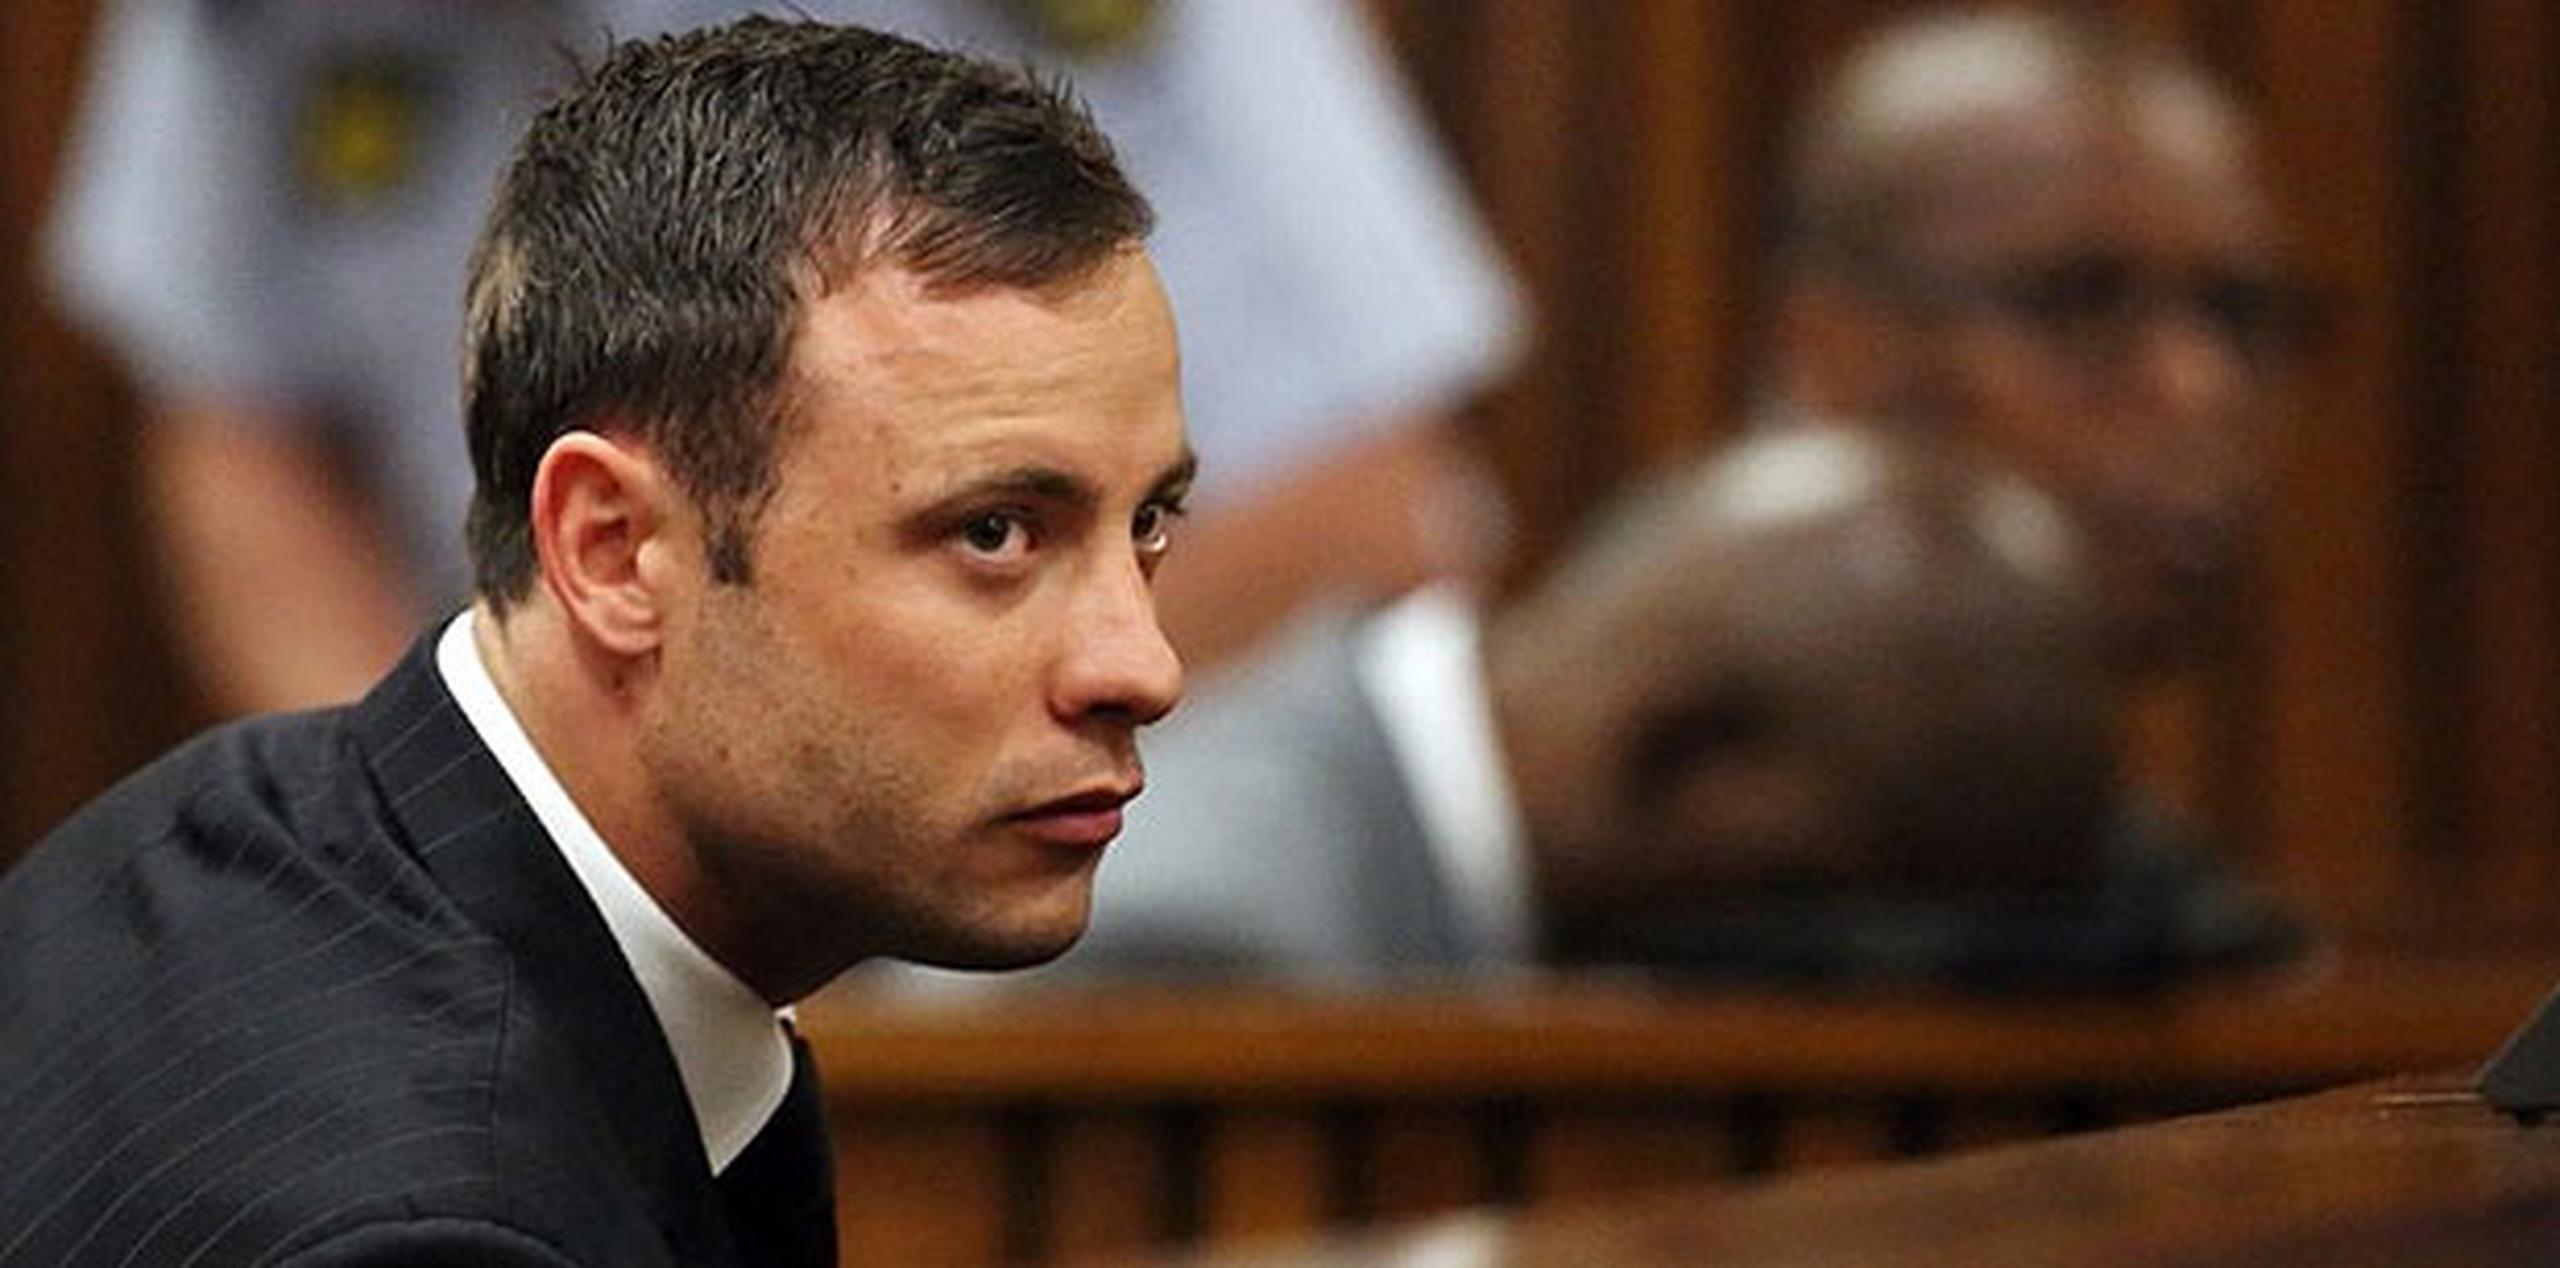 Si se le declara culpable de asesinato en la apelación, Pistorius se enfrentaría a un mínimo de 15 años de prisión. (Archivo)